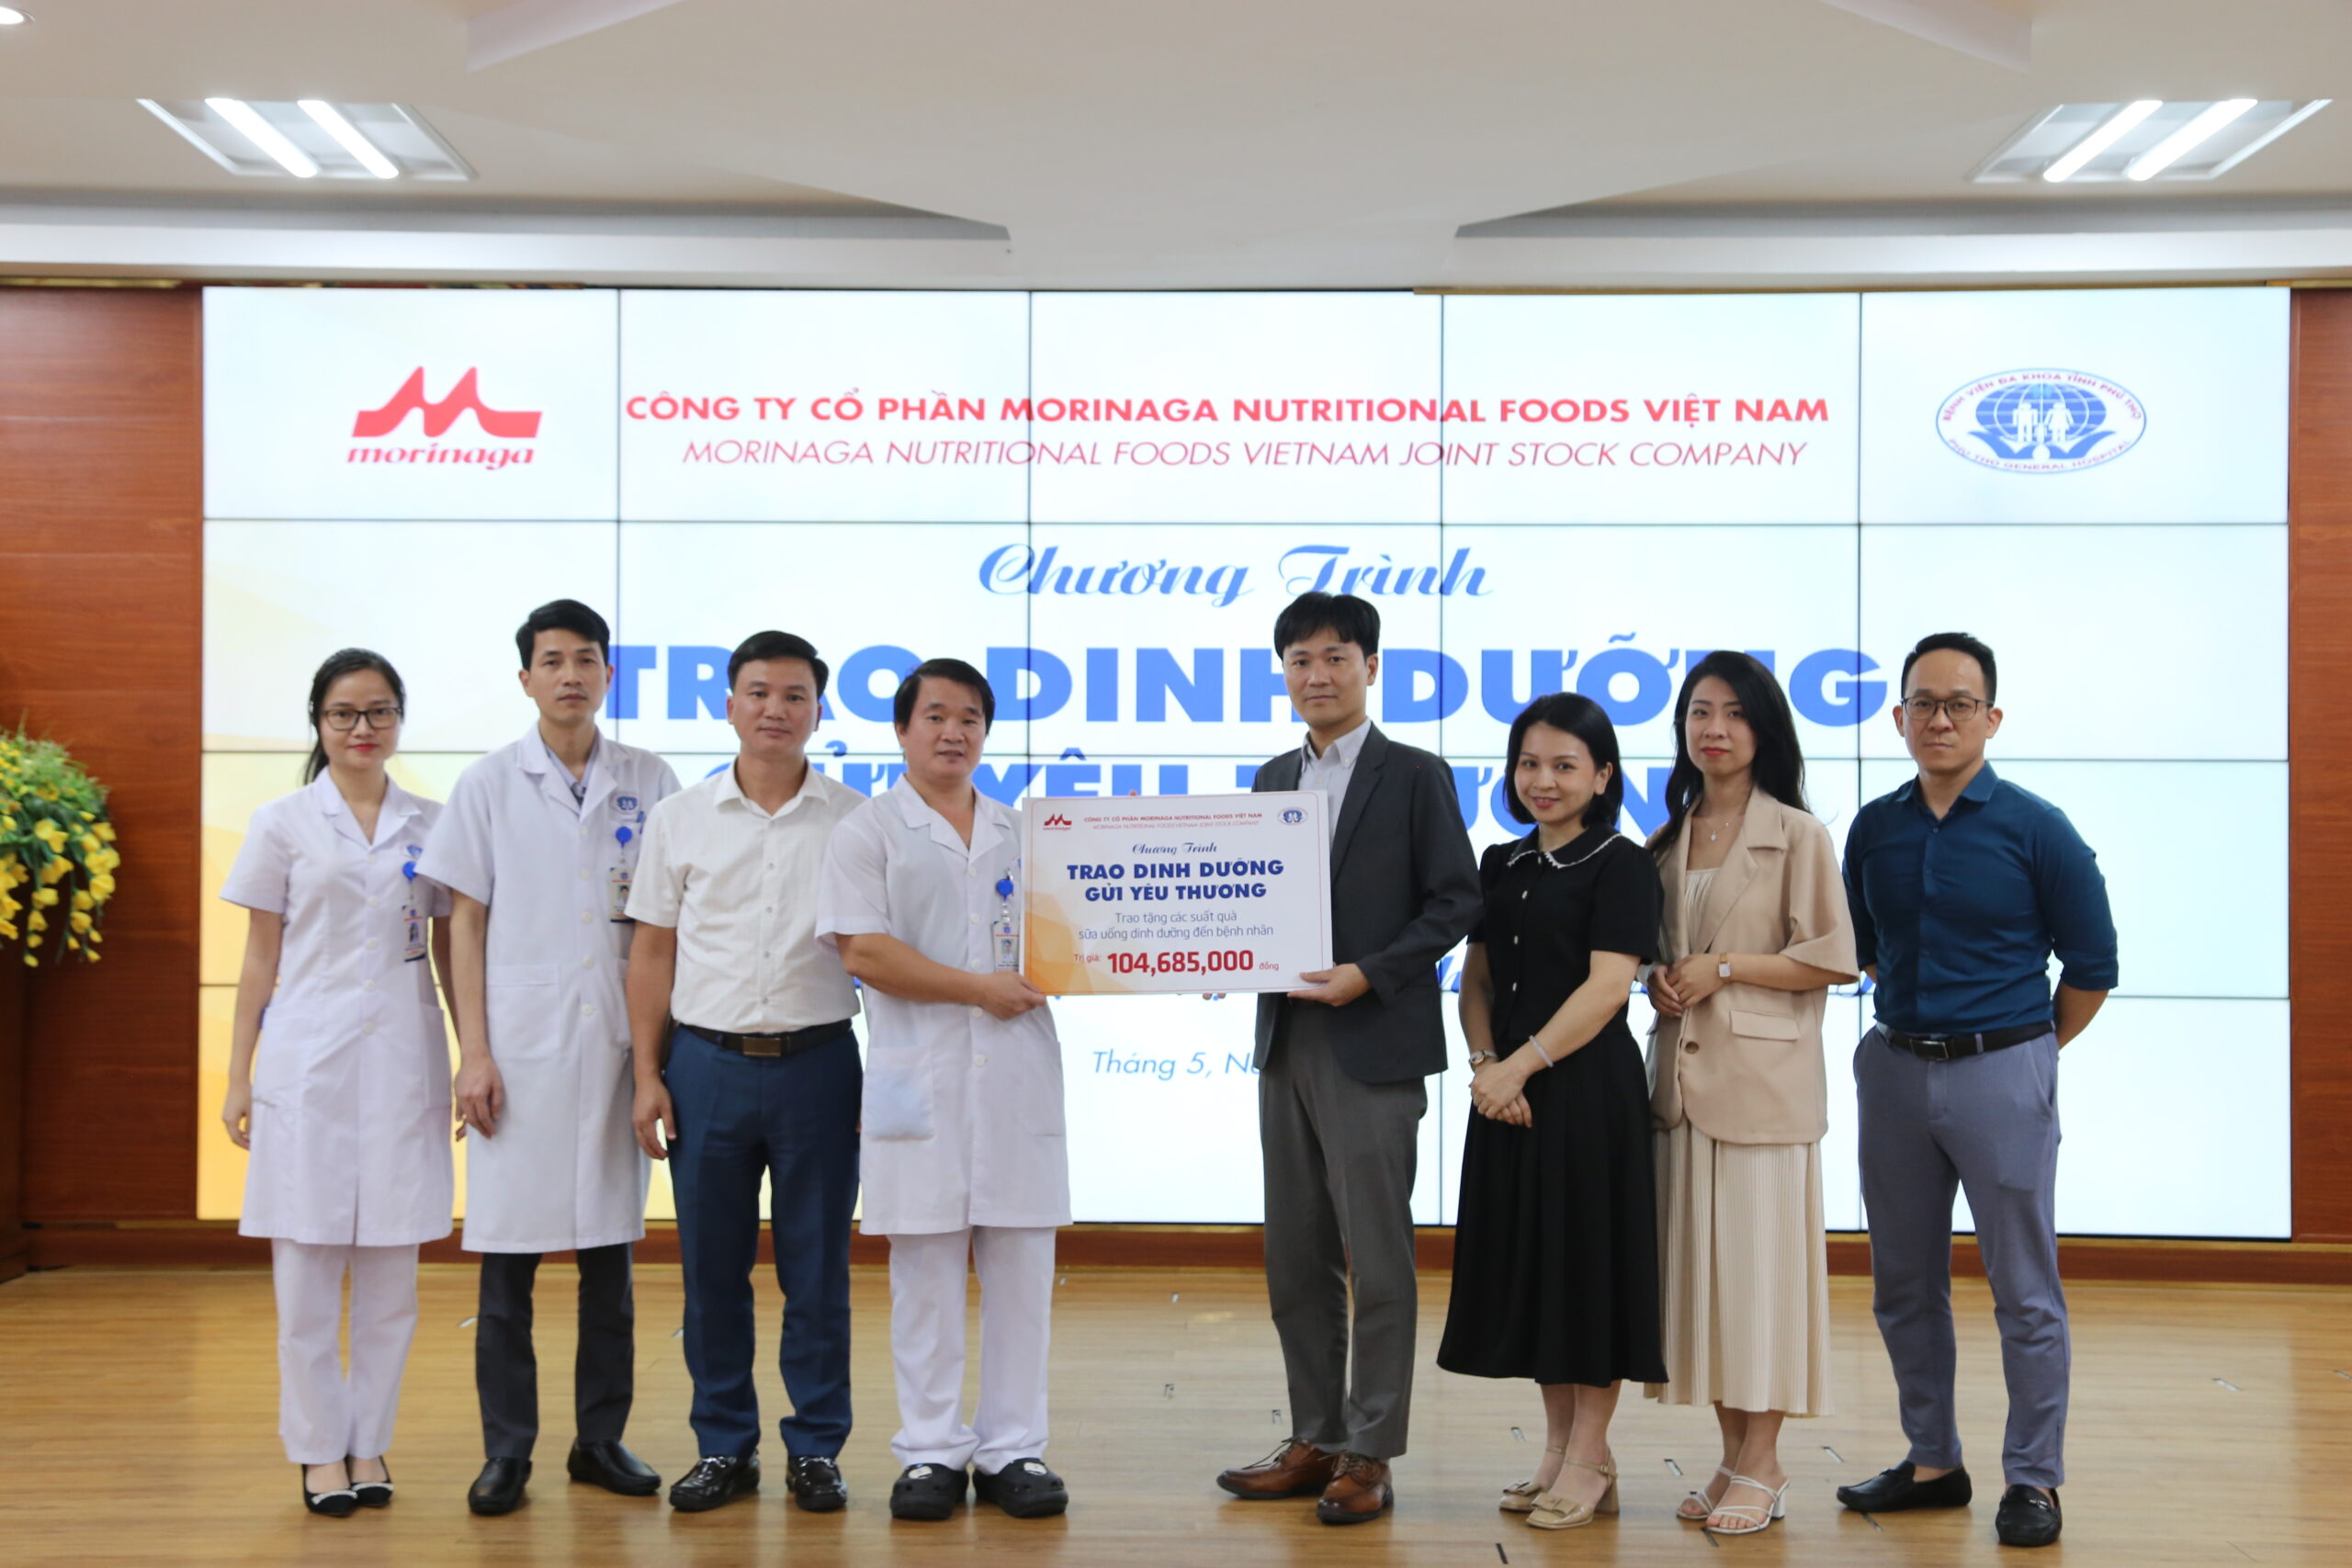 Đại diện Công ty cổ phần Morinaga Nutritional Foods Việt Nam trao tặng người bệnh 163 thùng sữa và thức uống dinh dưỡng với tổng giá trị trên 100 triệu đồng